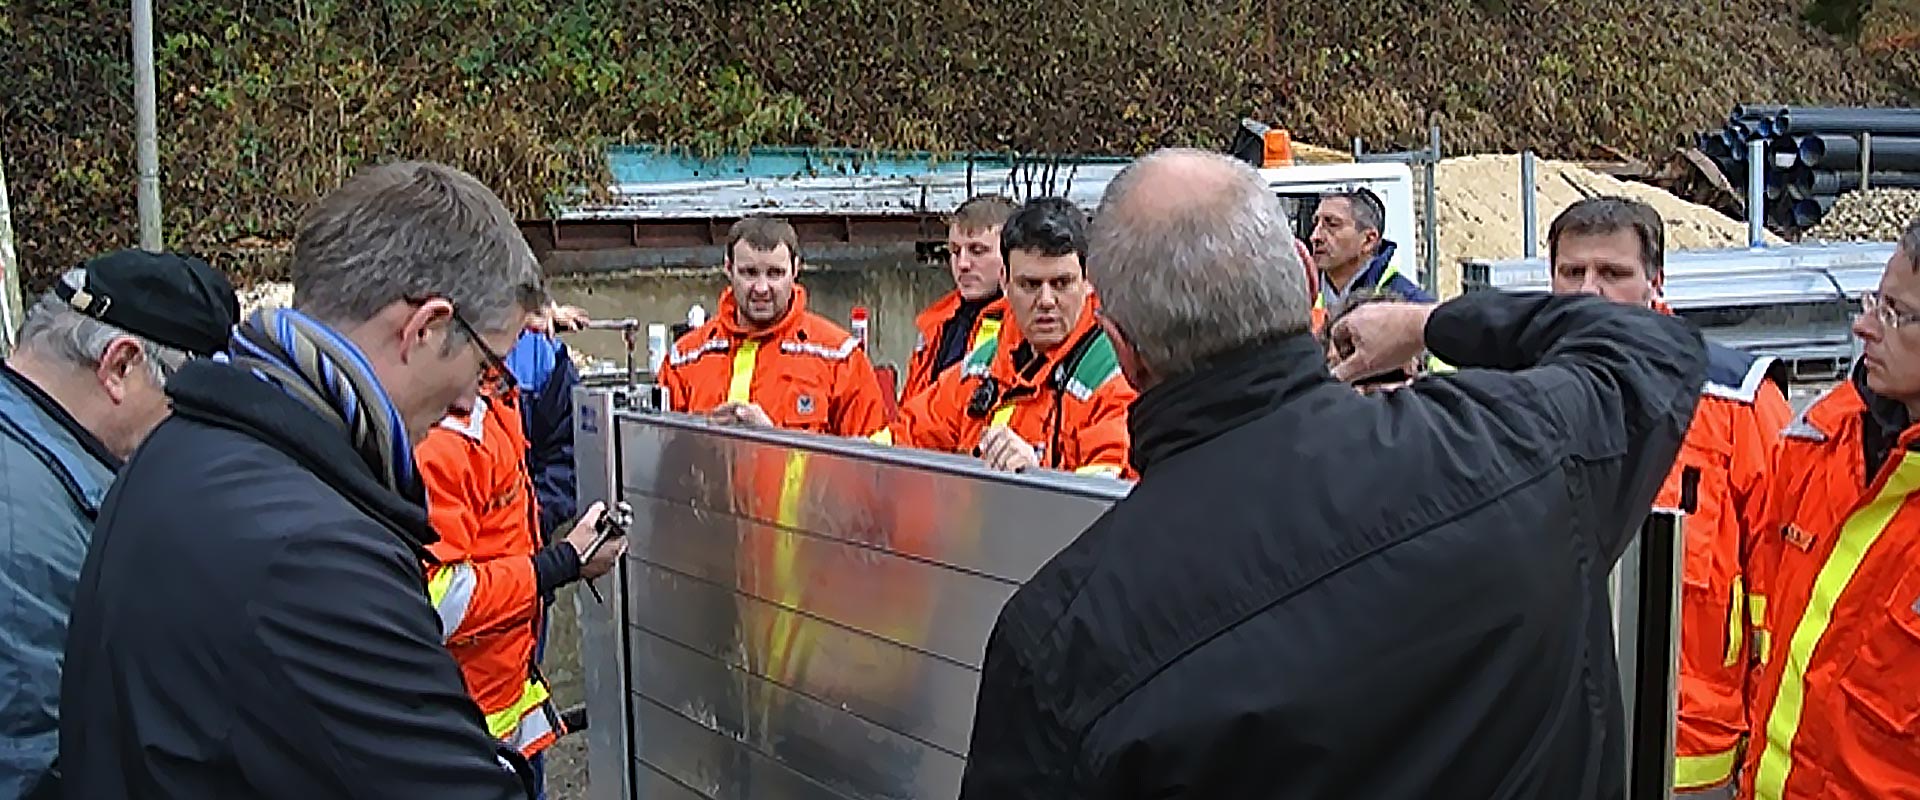 Mehrere Einsatzkräfte hören den Ausführungen zum mobilen Hochwasserschutzsystem in Oppenweiler zu. Ein Mann zeigt bei der Einführung ein mobiles Hochwasserschutzmauerelement.